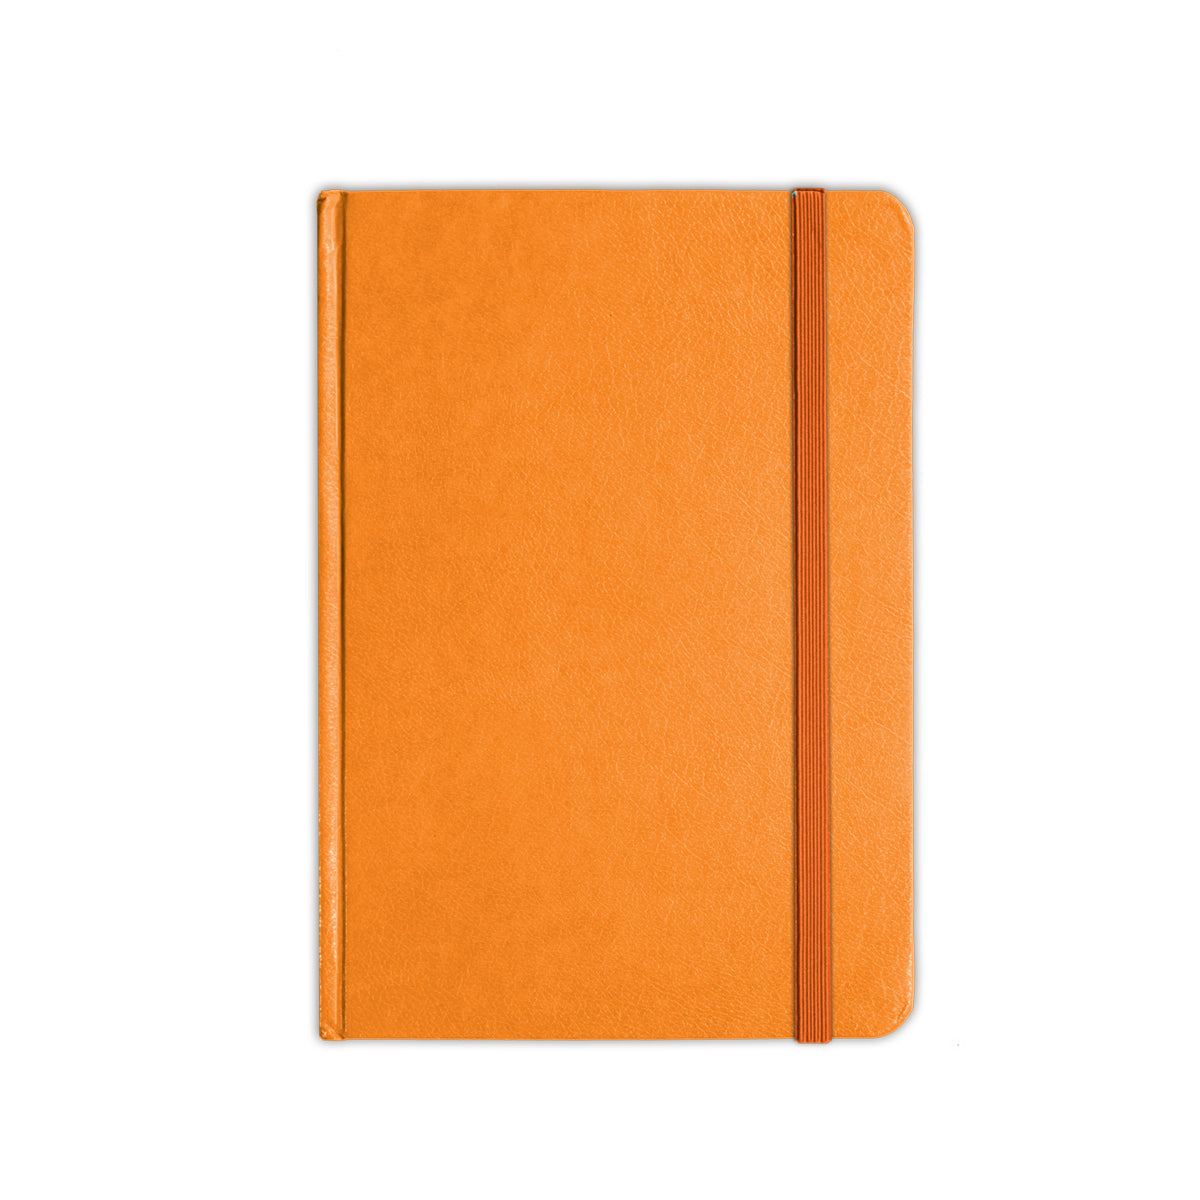 Orange Notebook